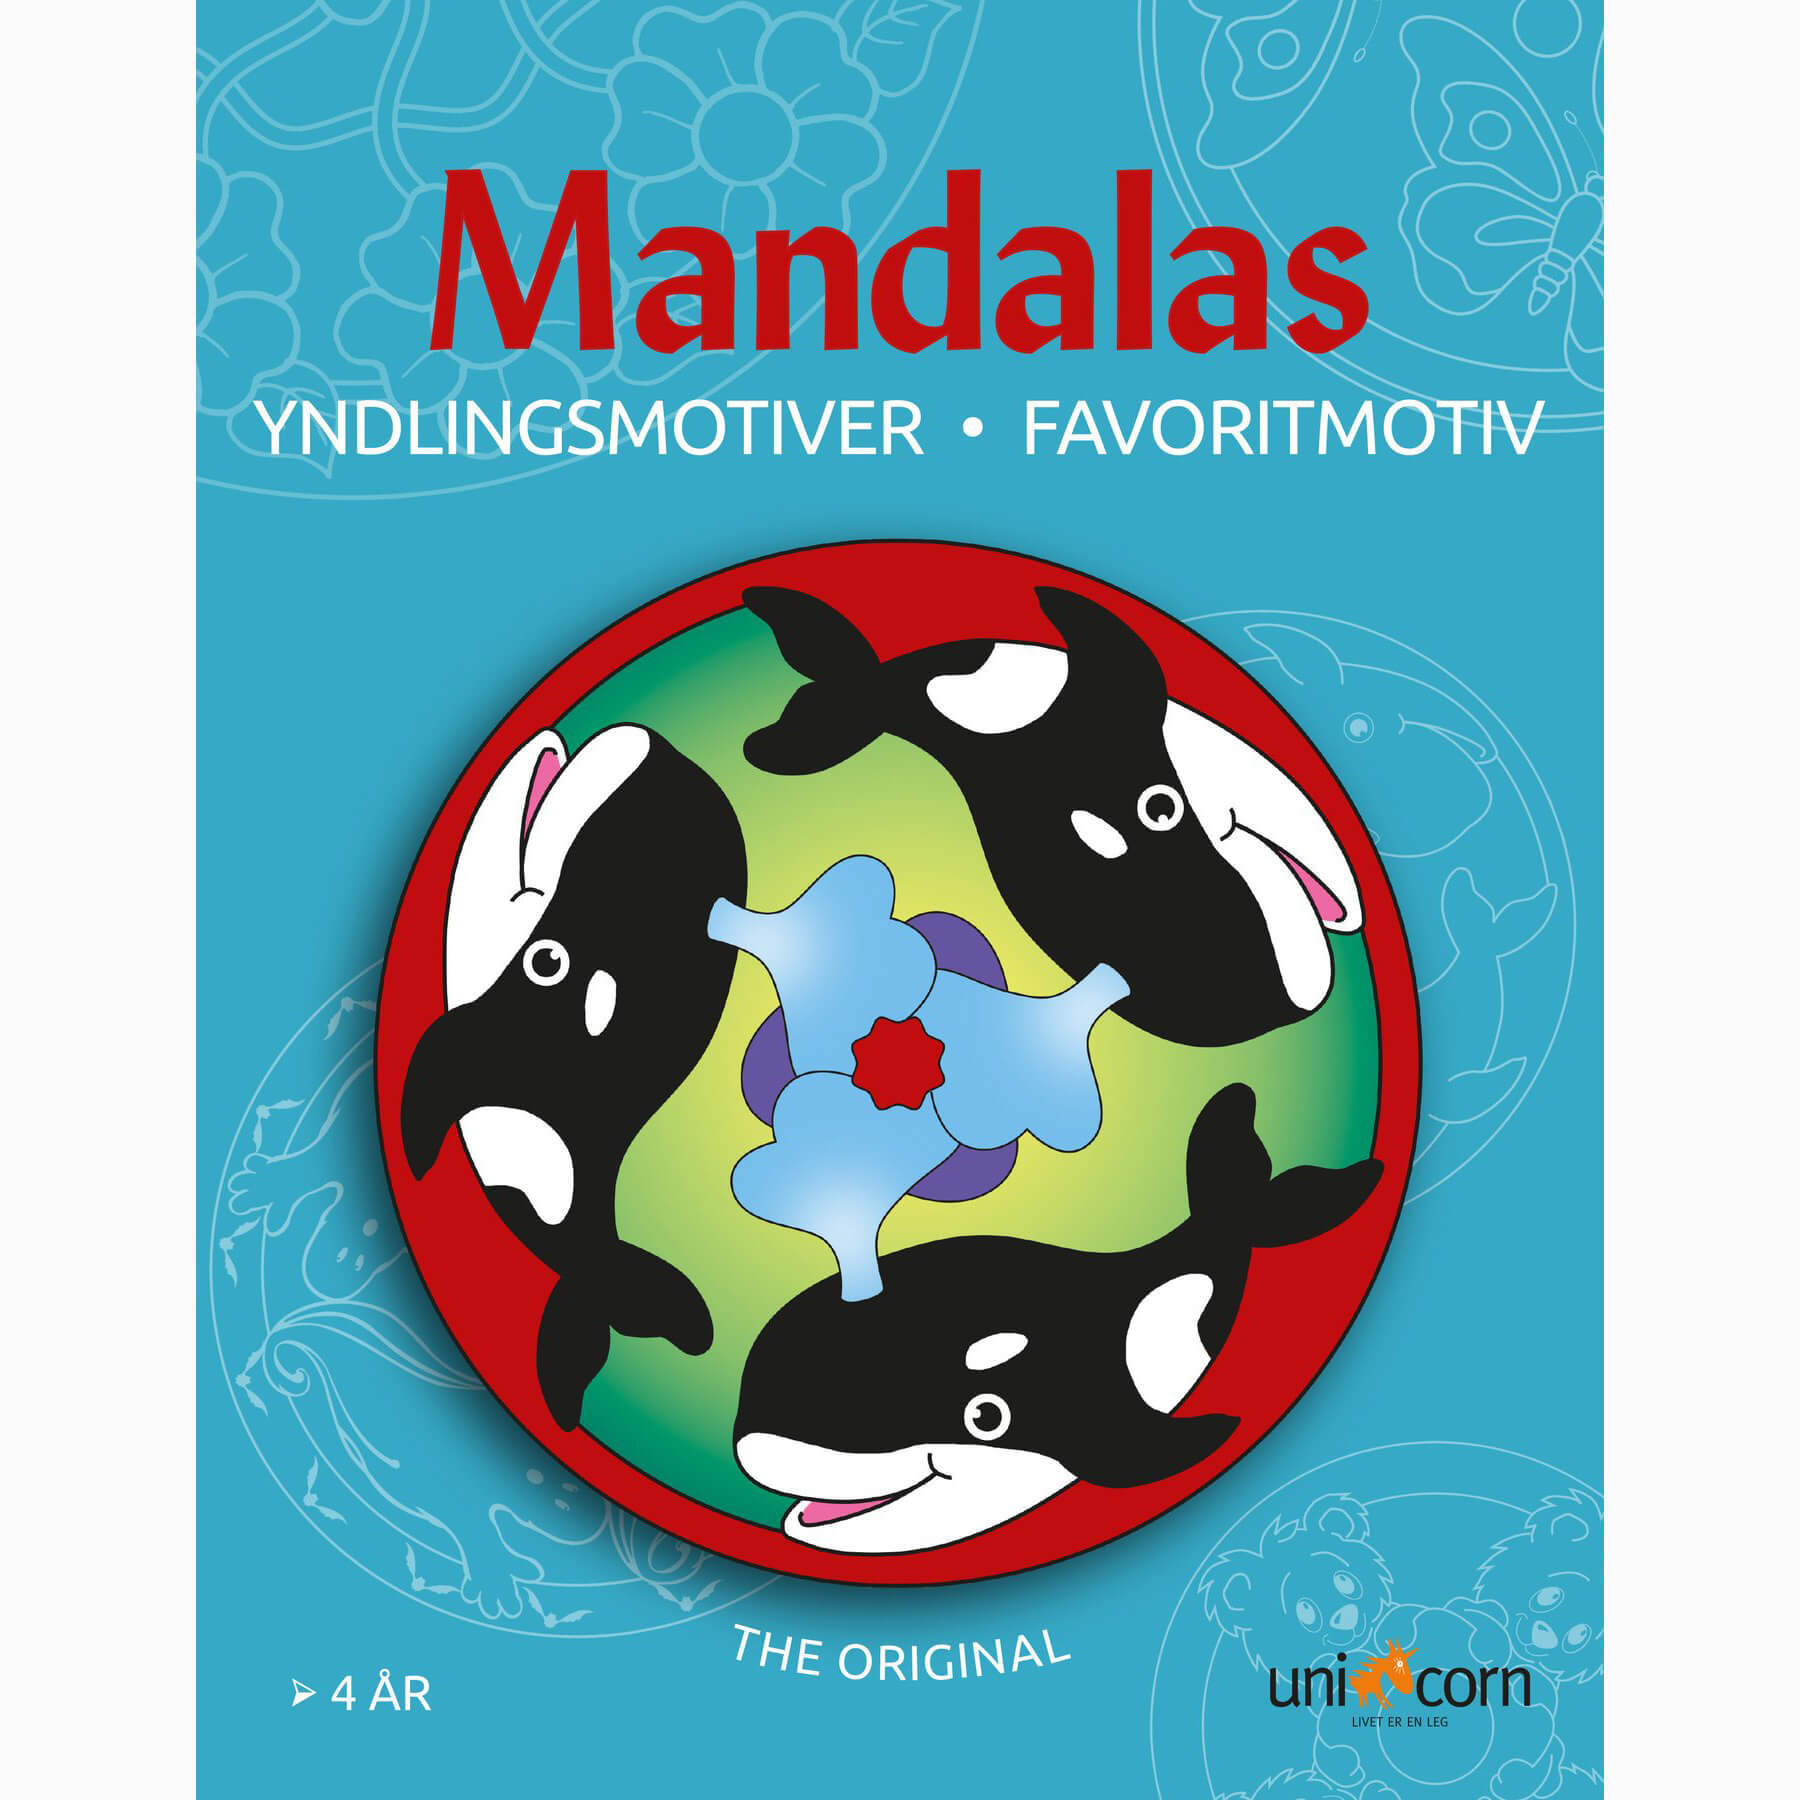 Mandalas - Yndlingsmotiver fra 4 år